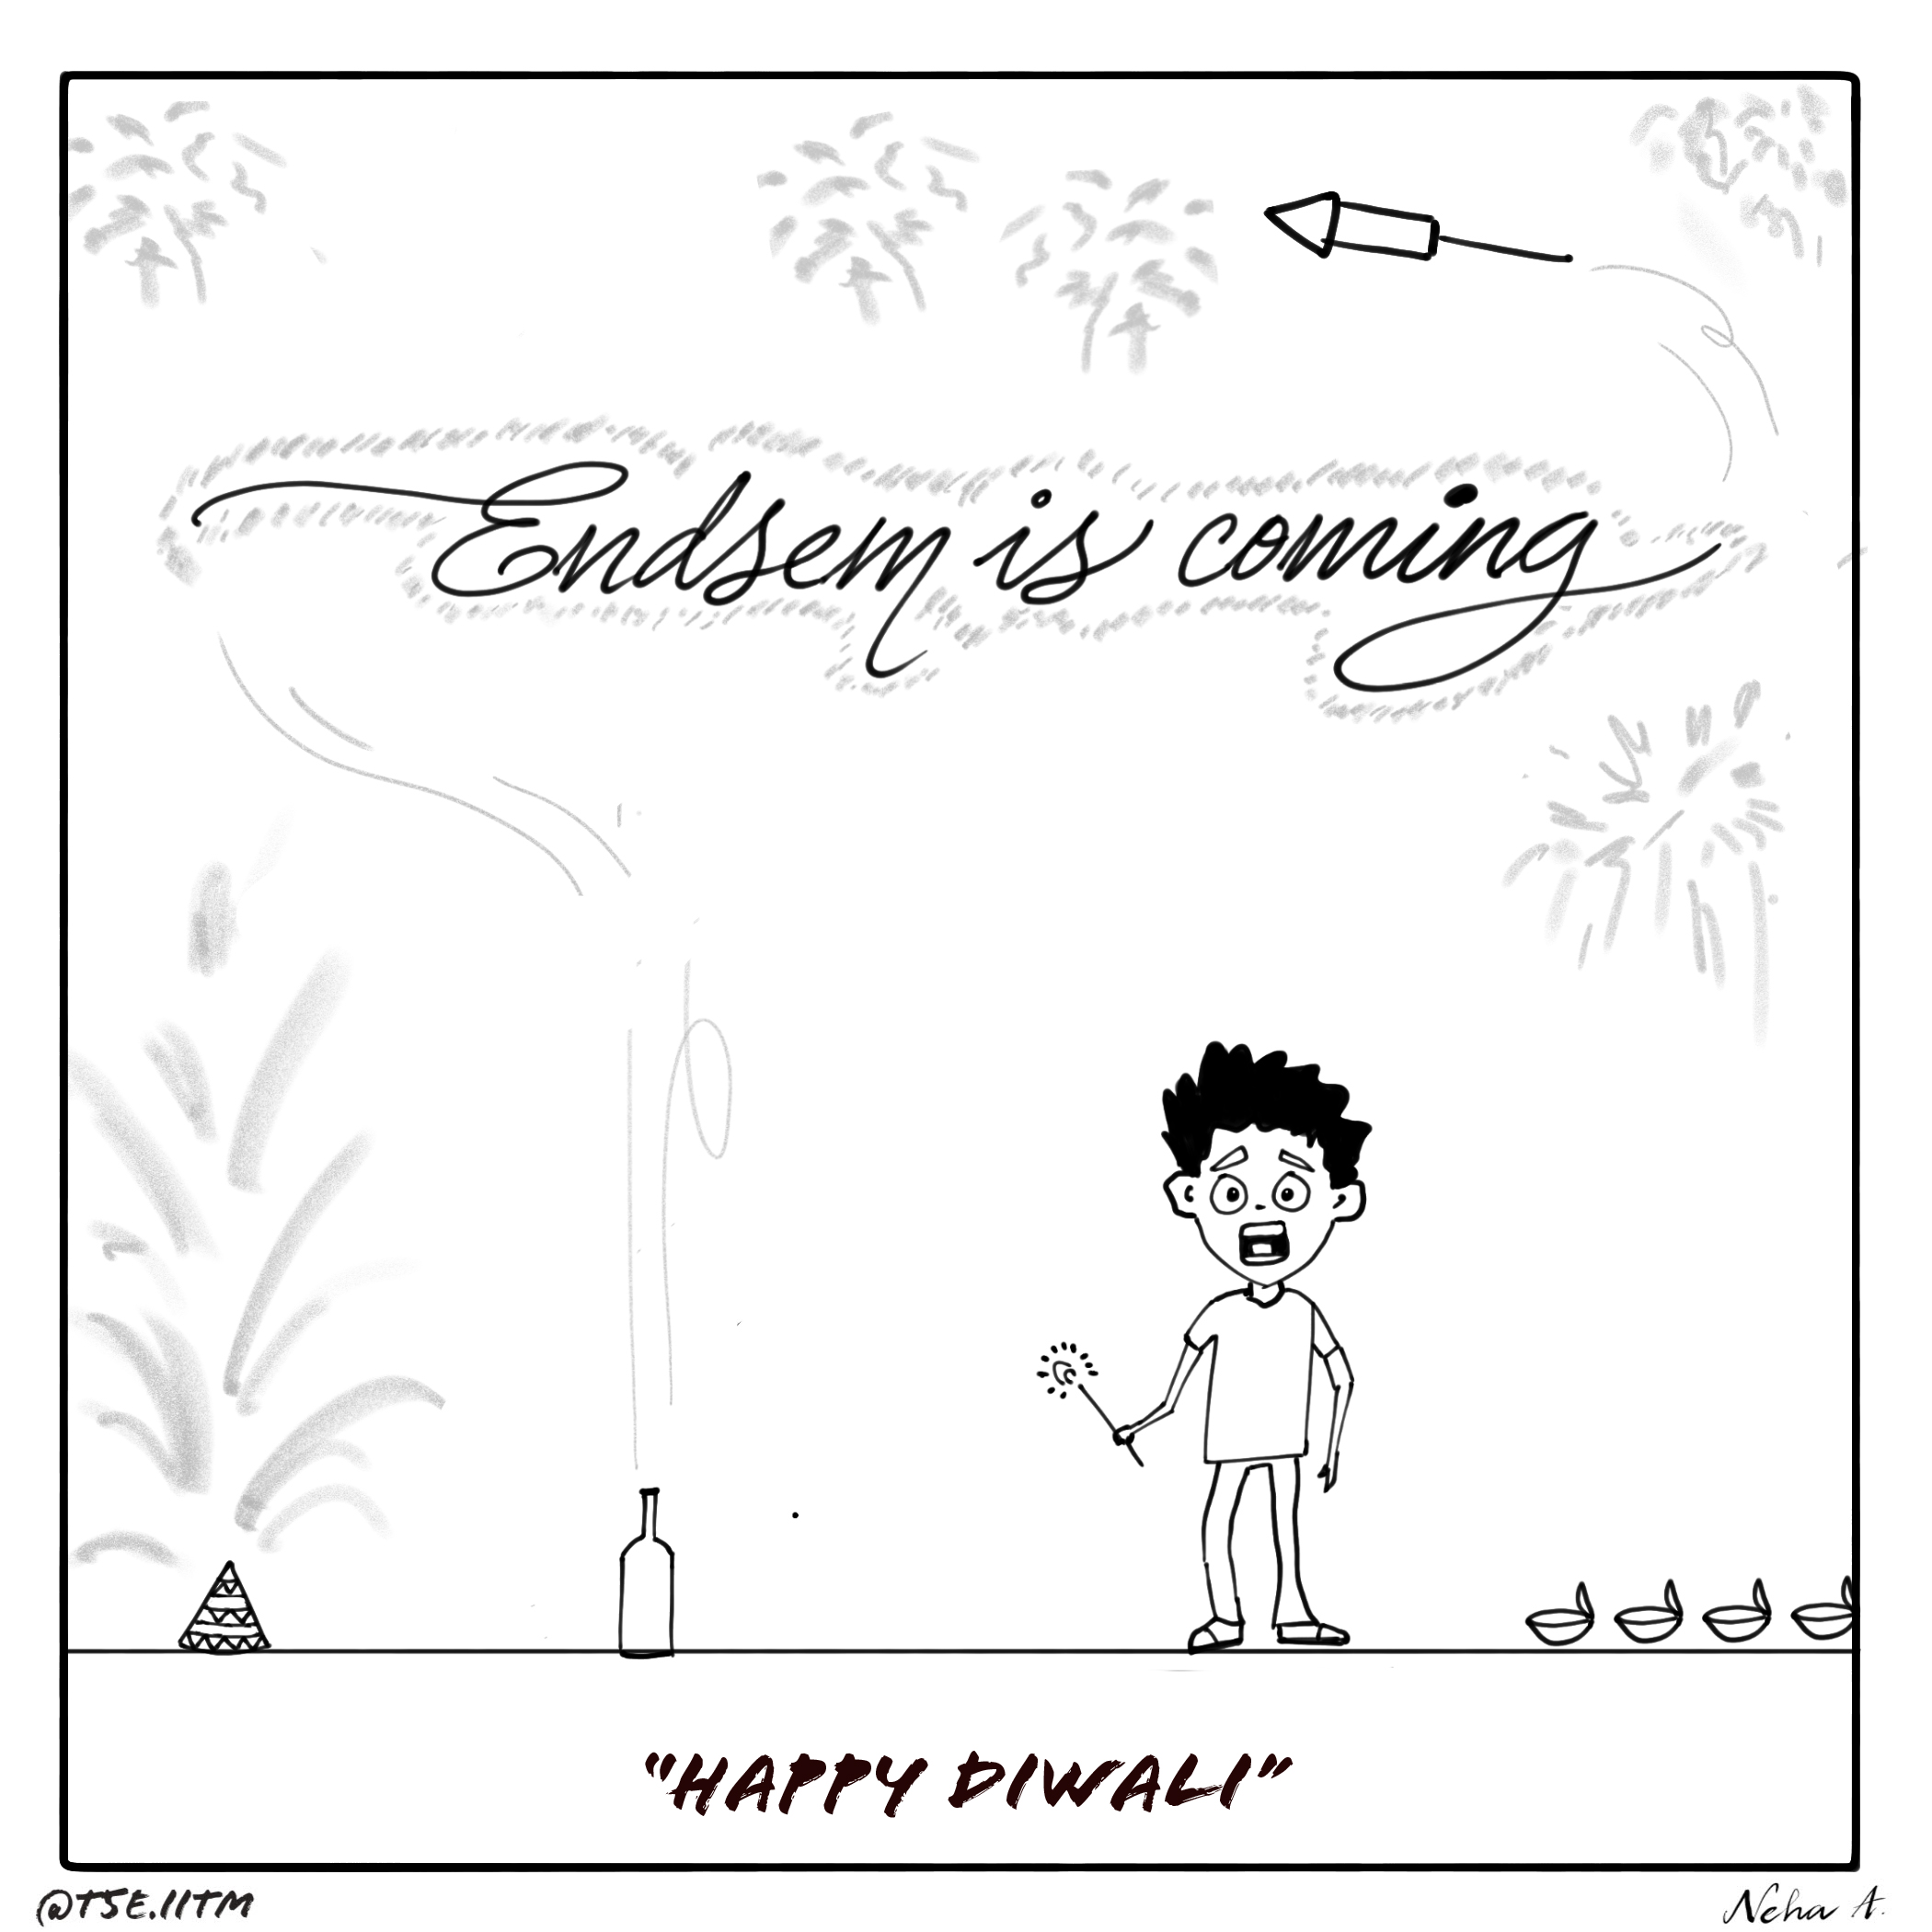 Happy Diwali, indeed.